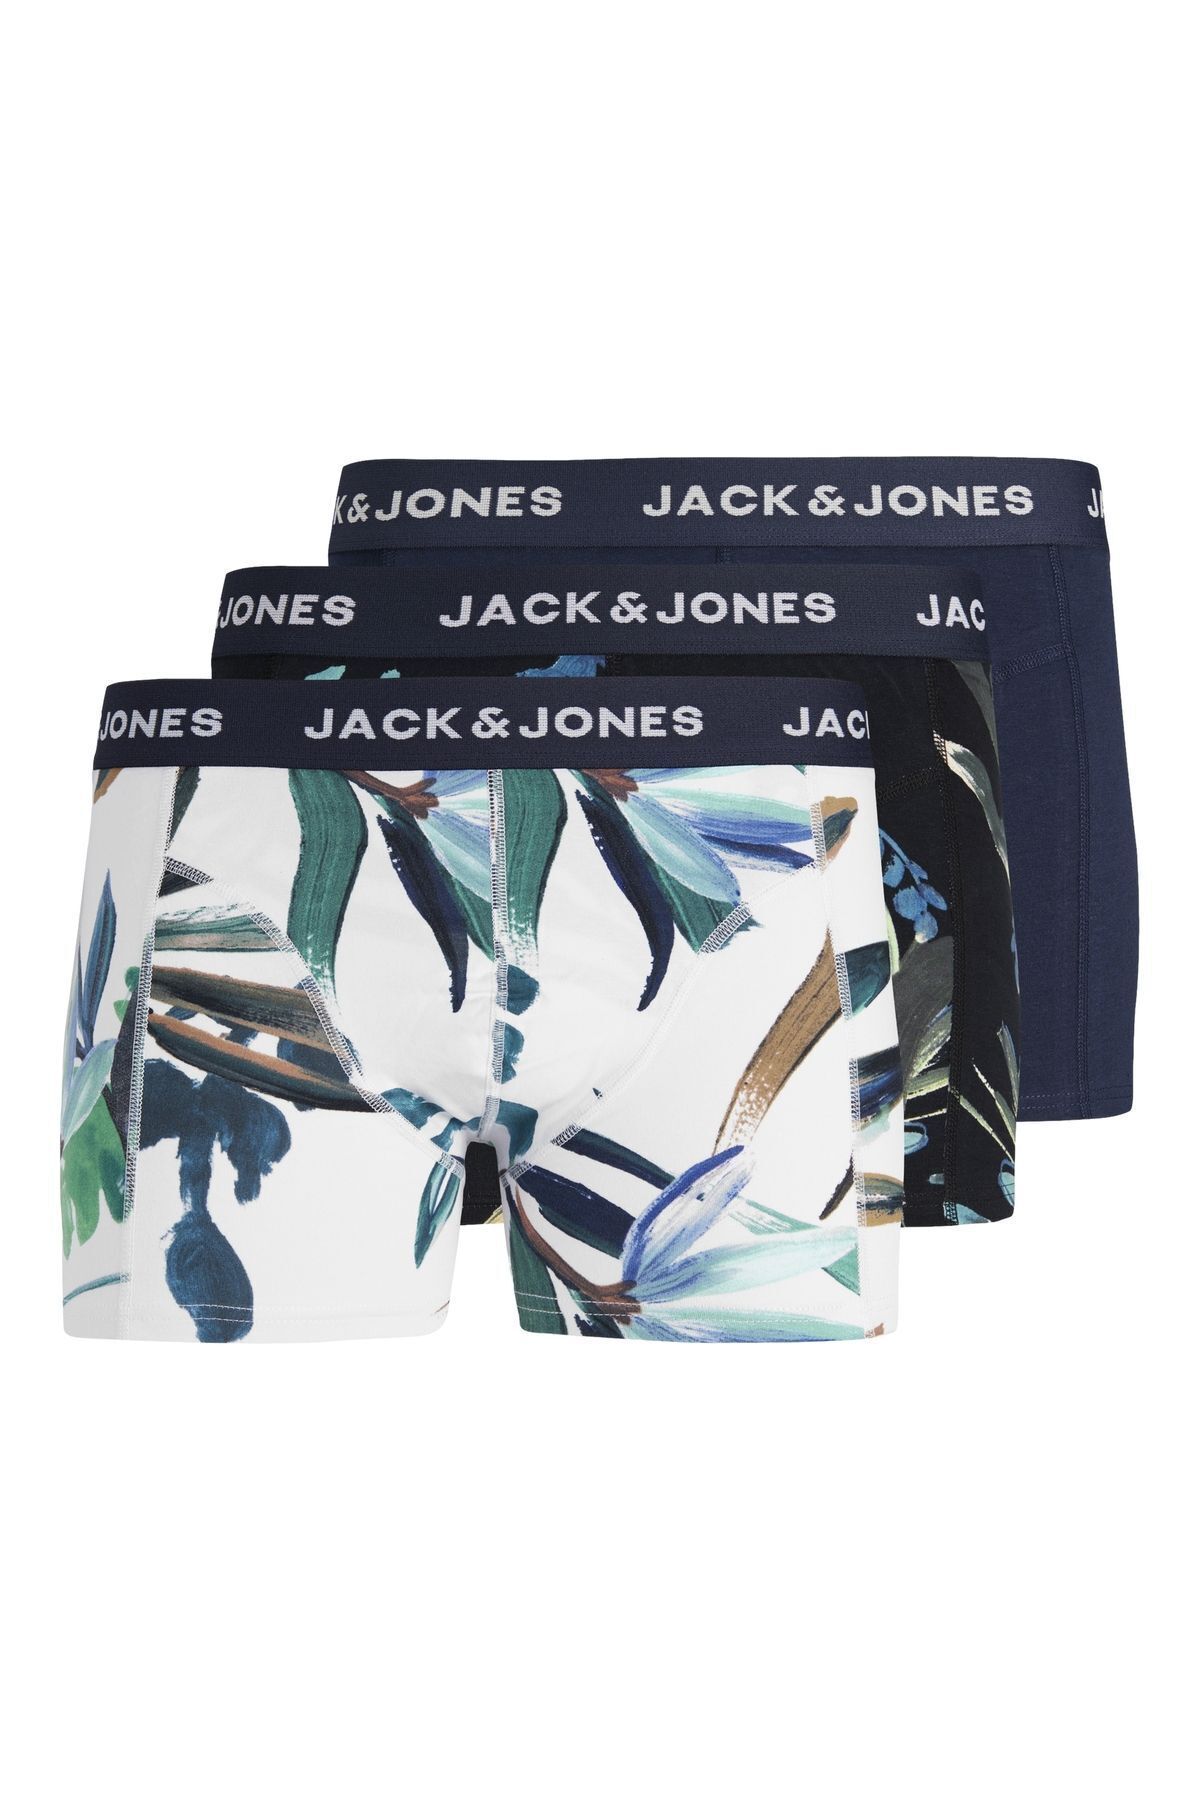 Jack & Jones Jack Jones Jaclouıs Trunks 3 Pack Sn Pls Erkek Lacivert Büyük Beden Boxer 12257400-04